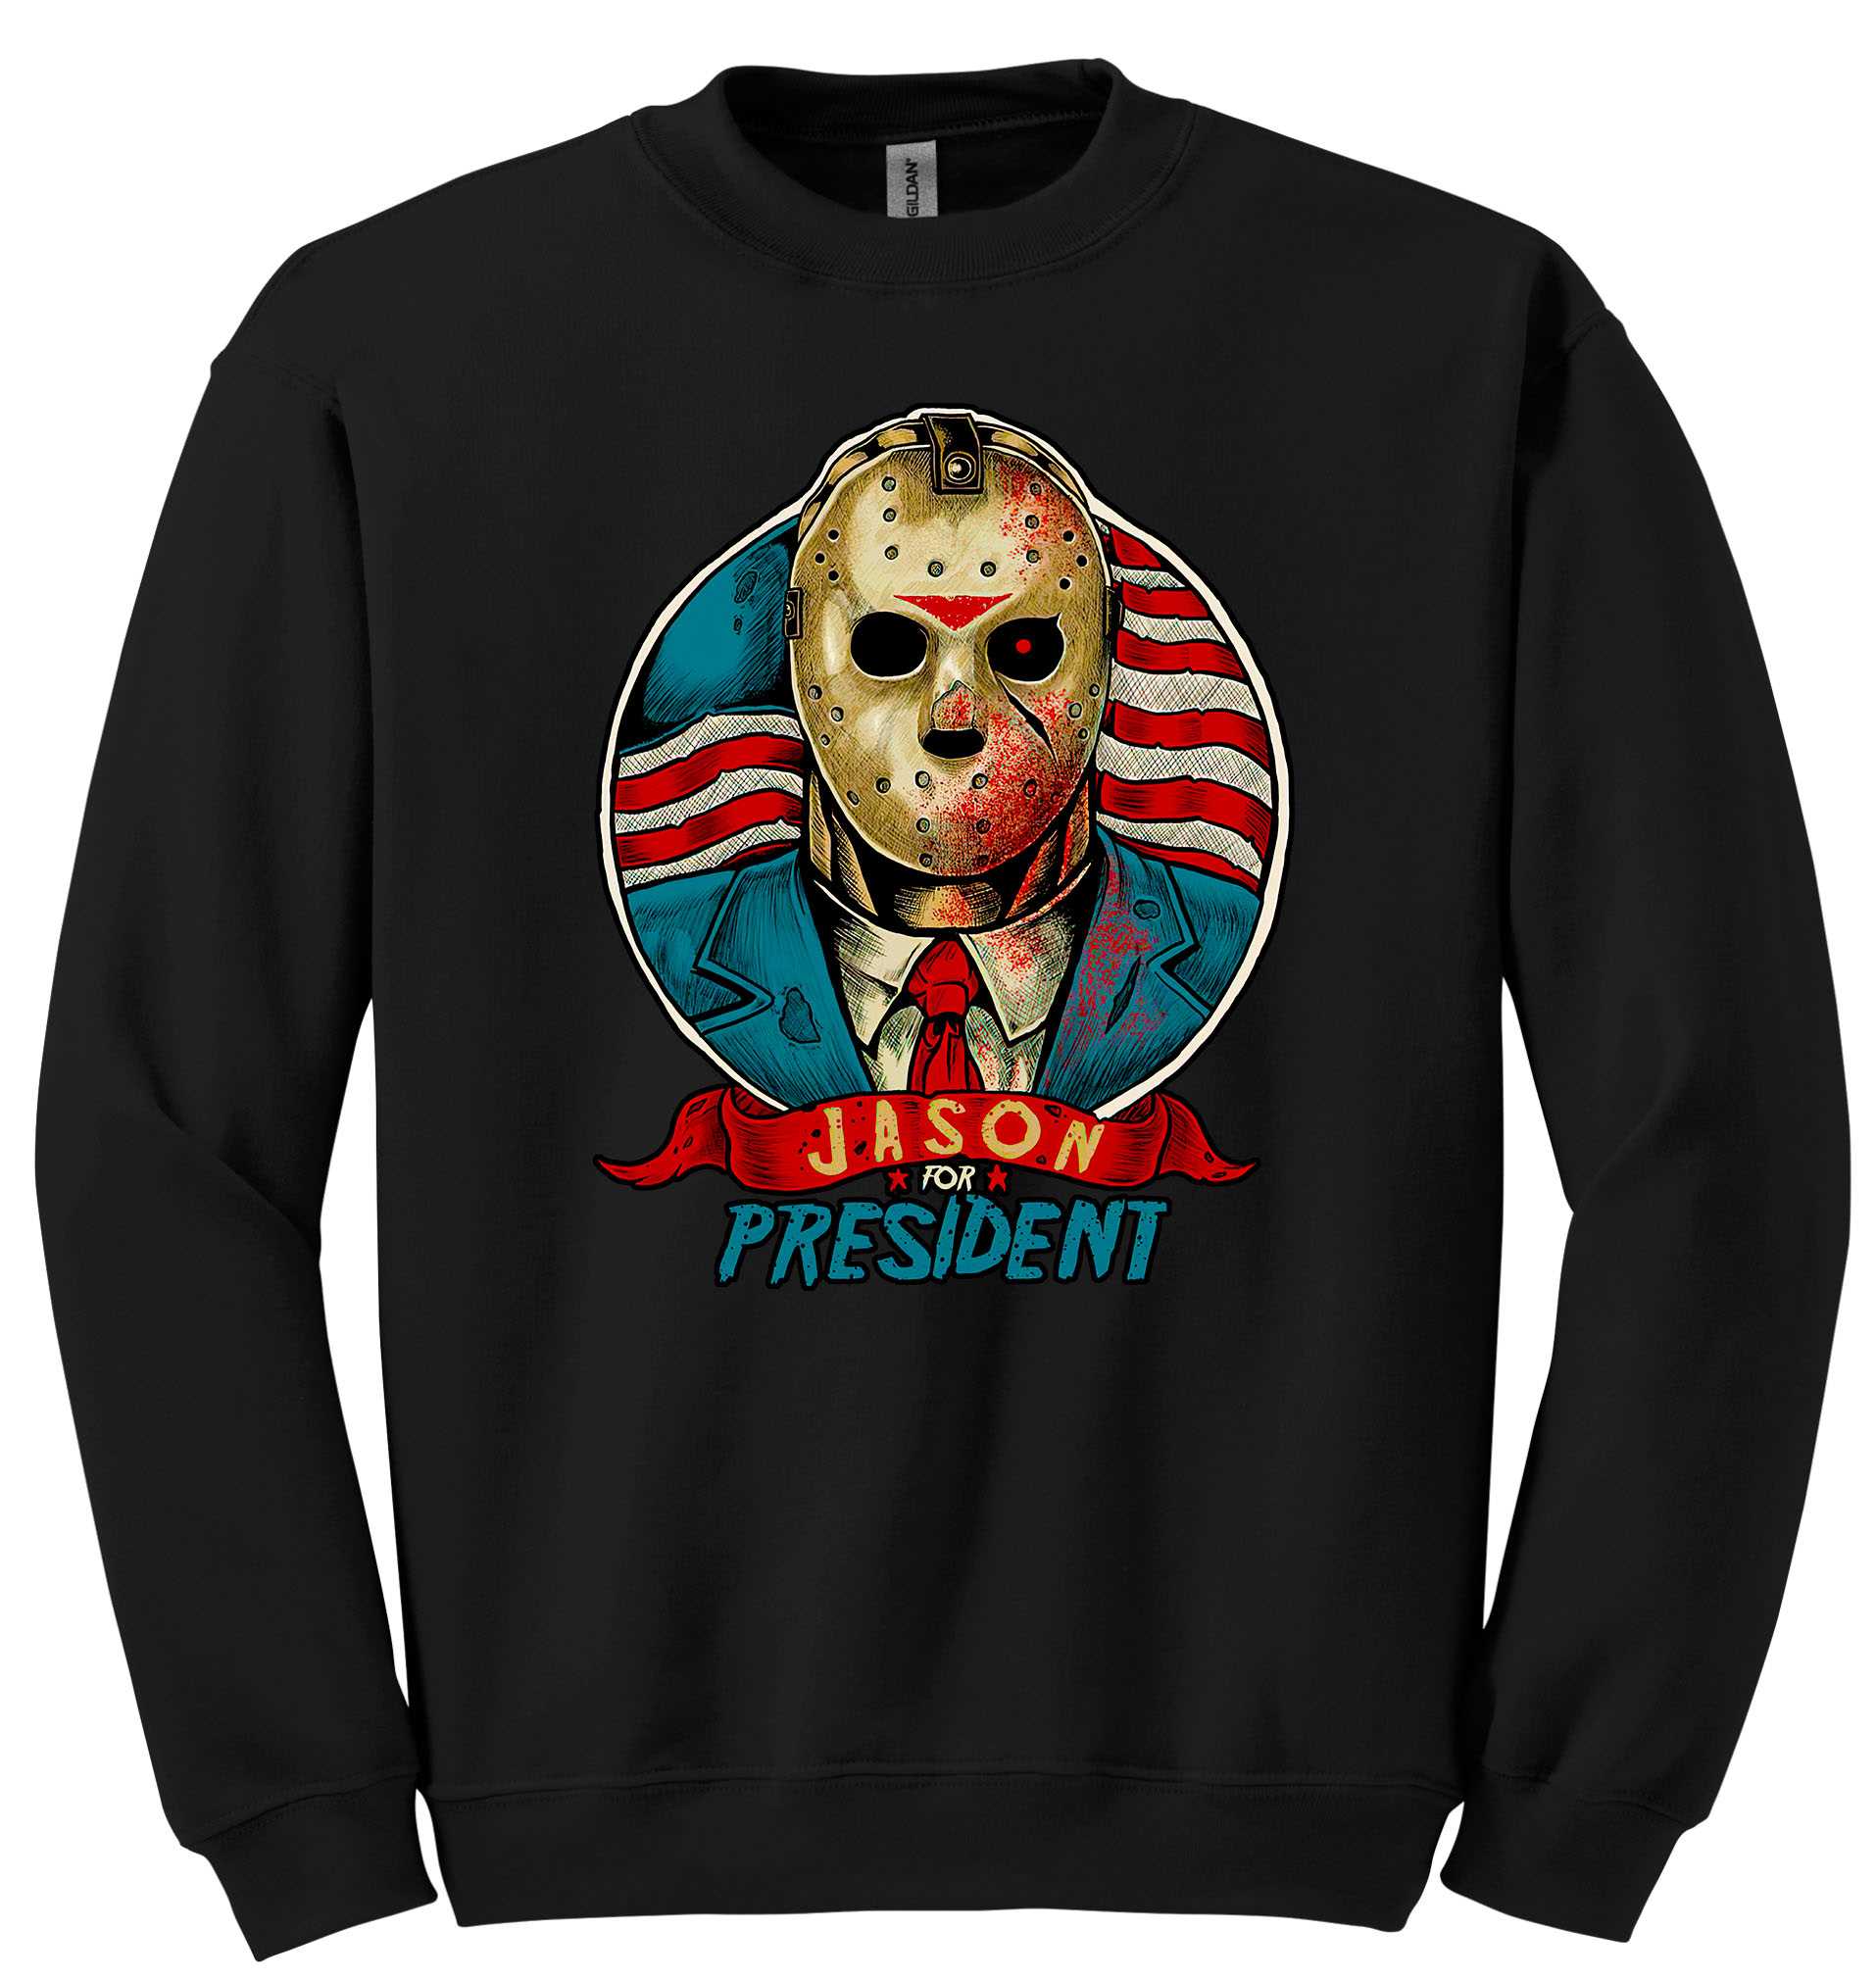 Jason For President